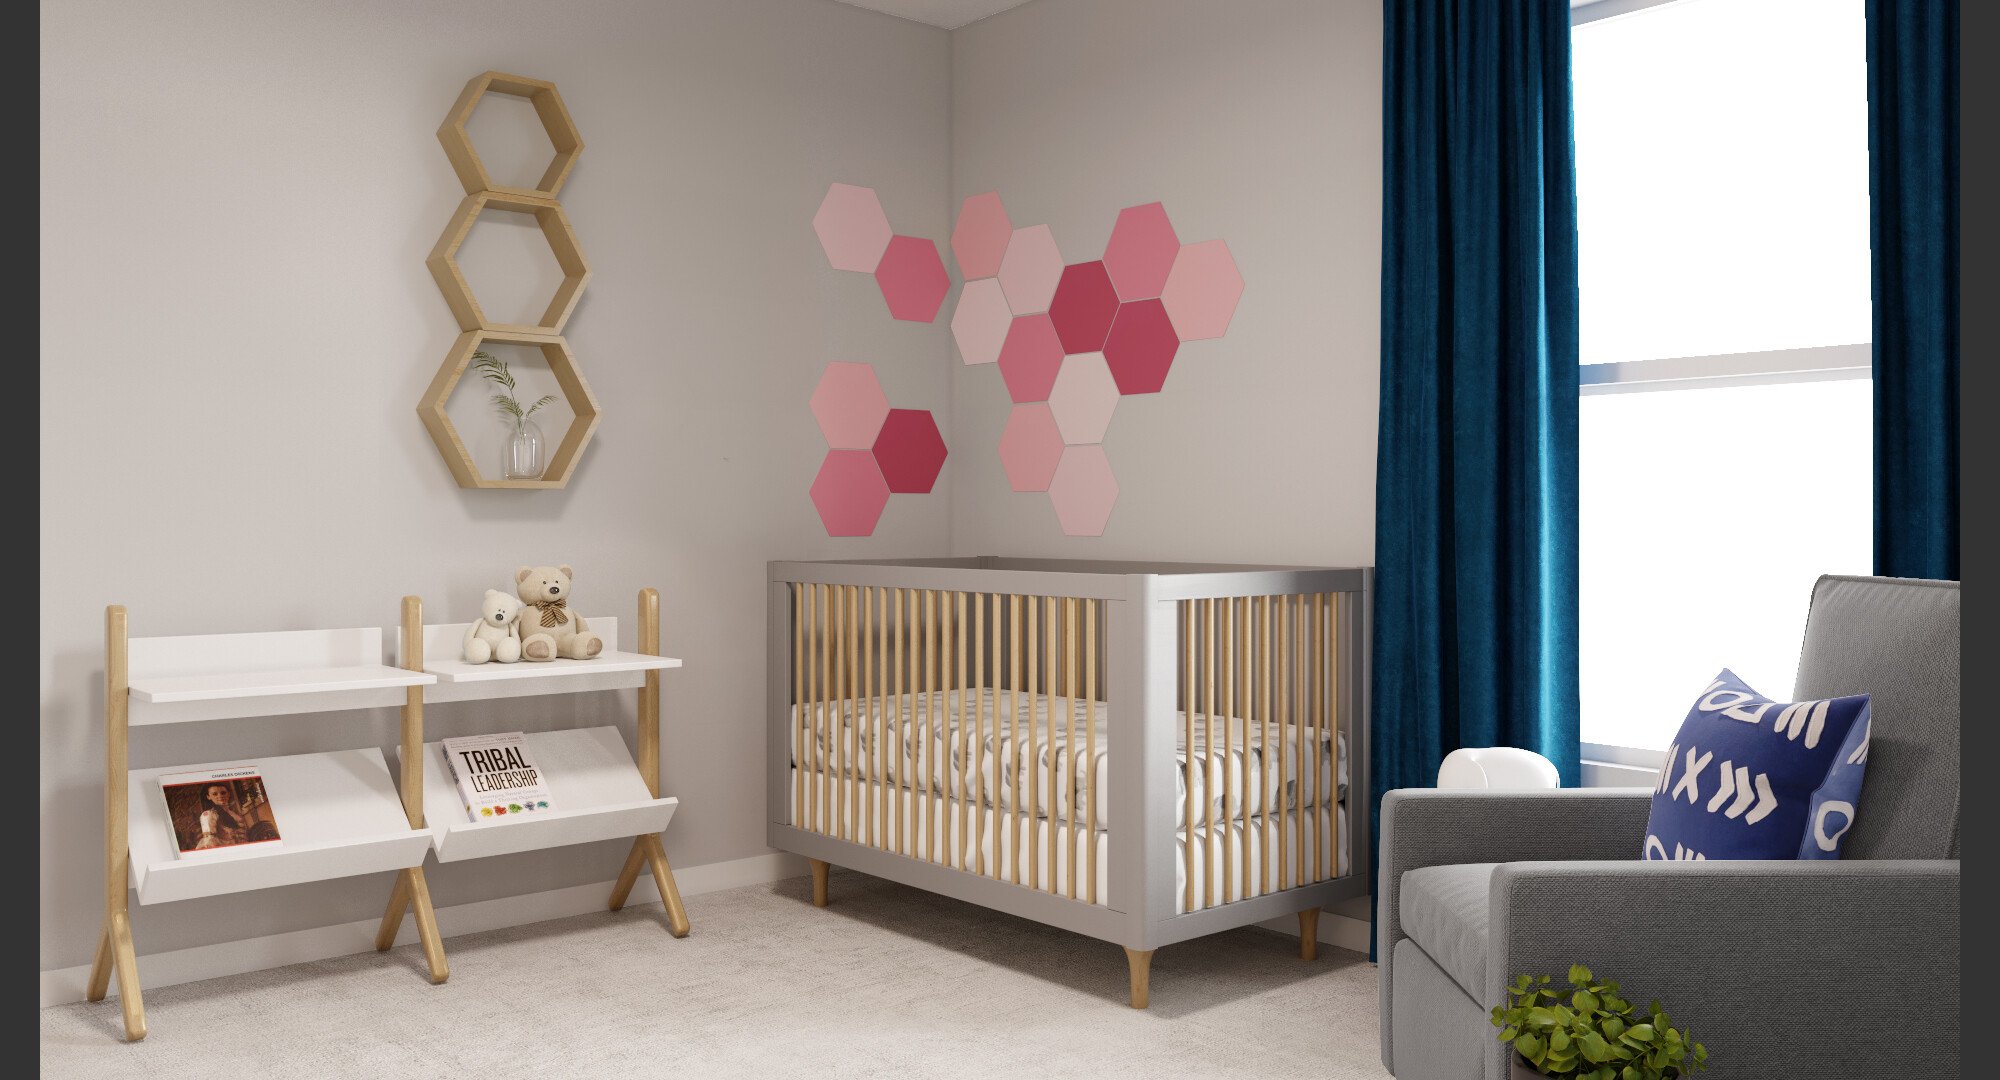 Online Nursery Design interior design service 3